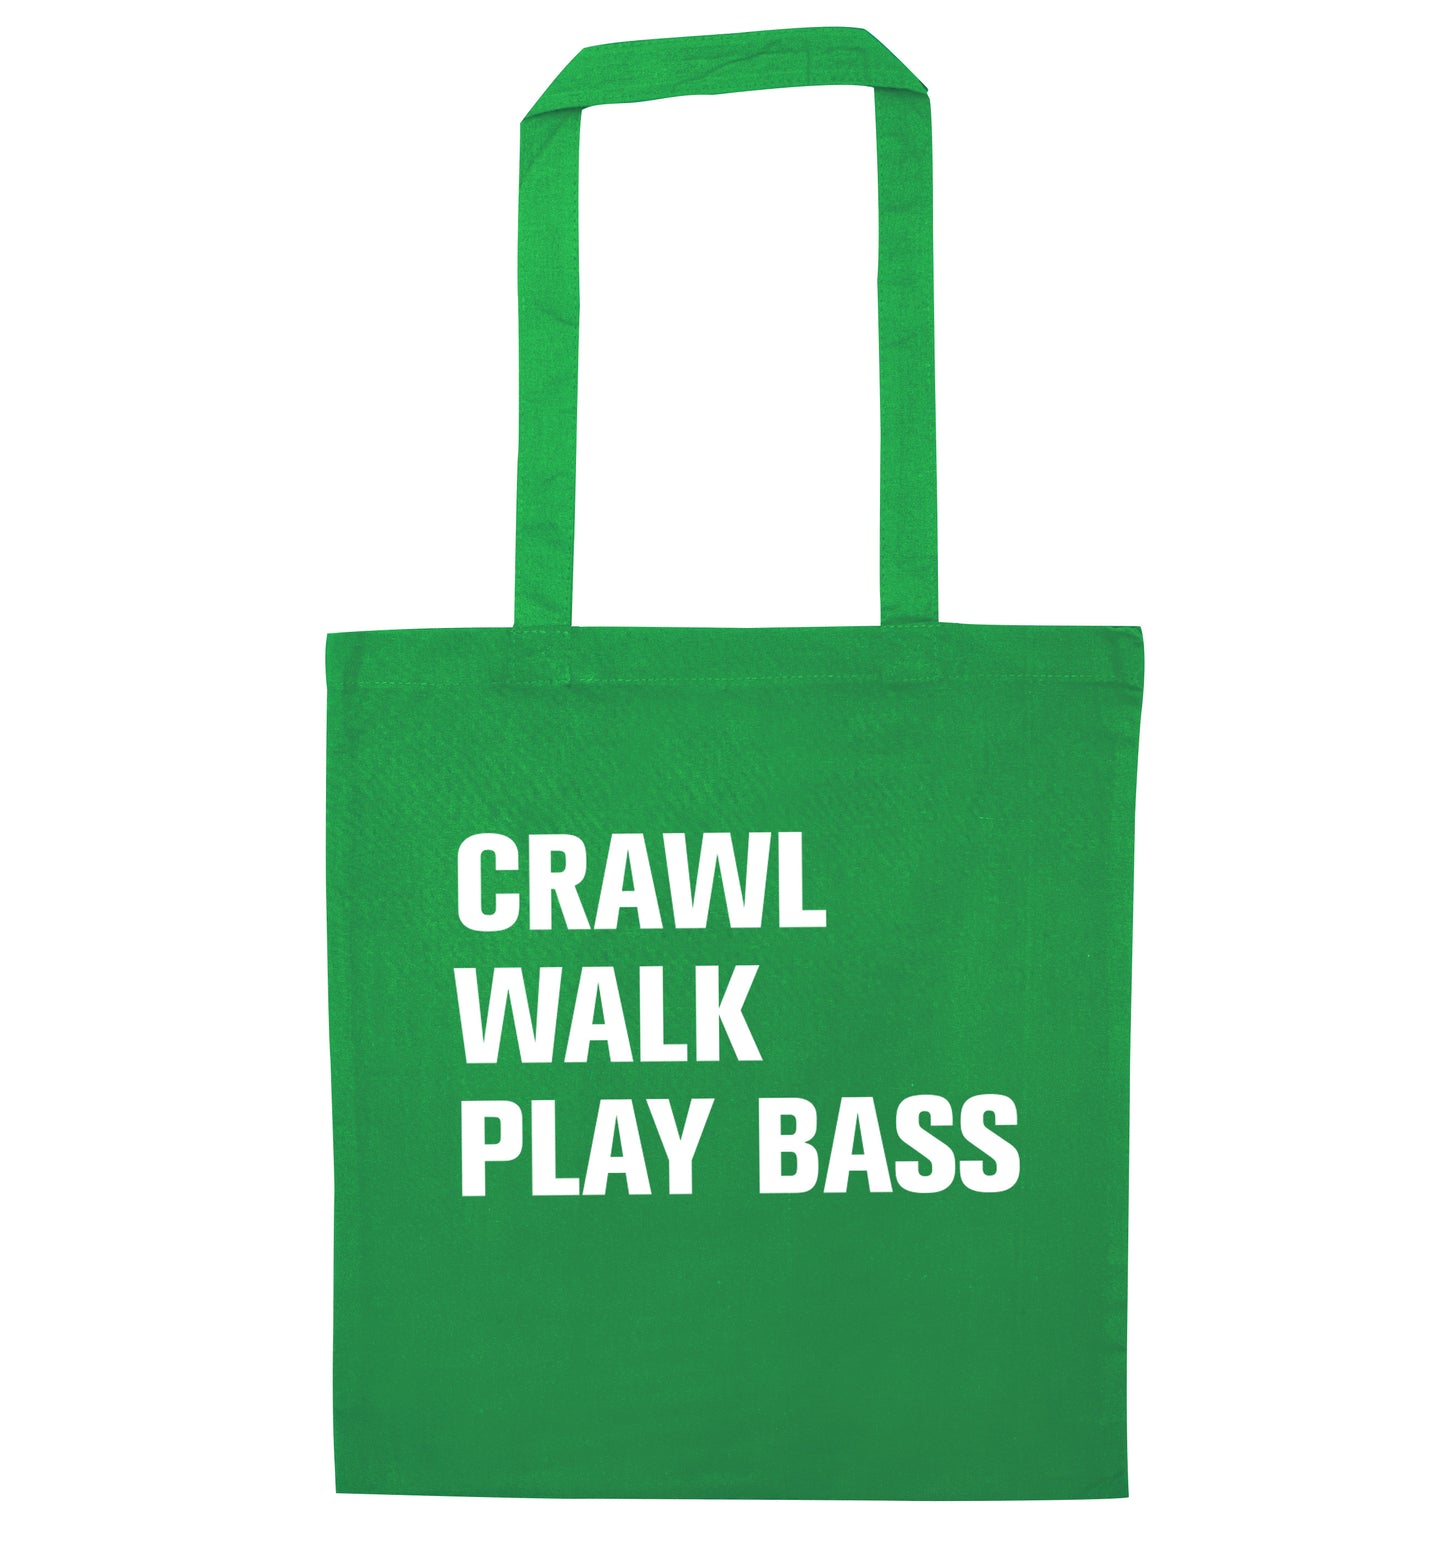 Crawl Walk Play Bass green tote bag